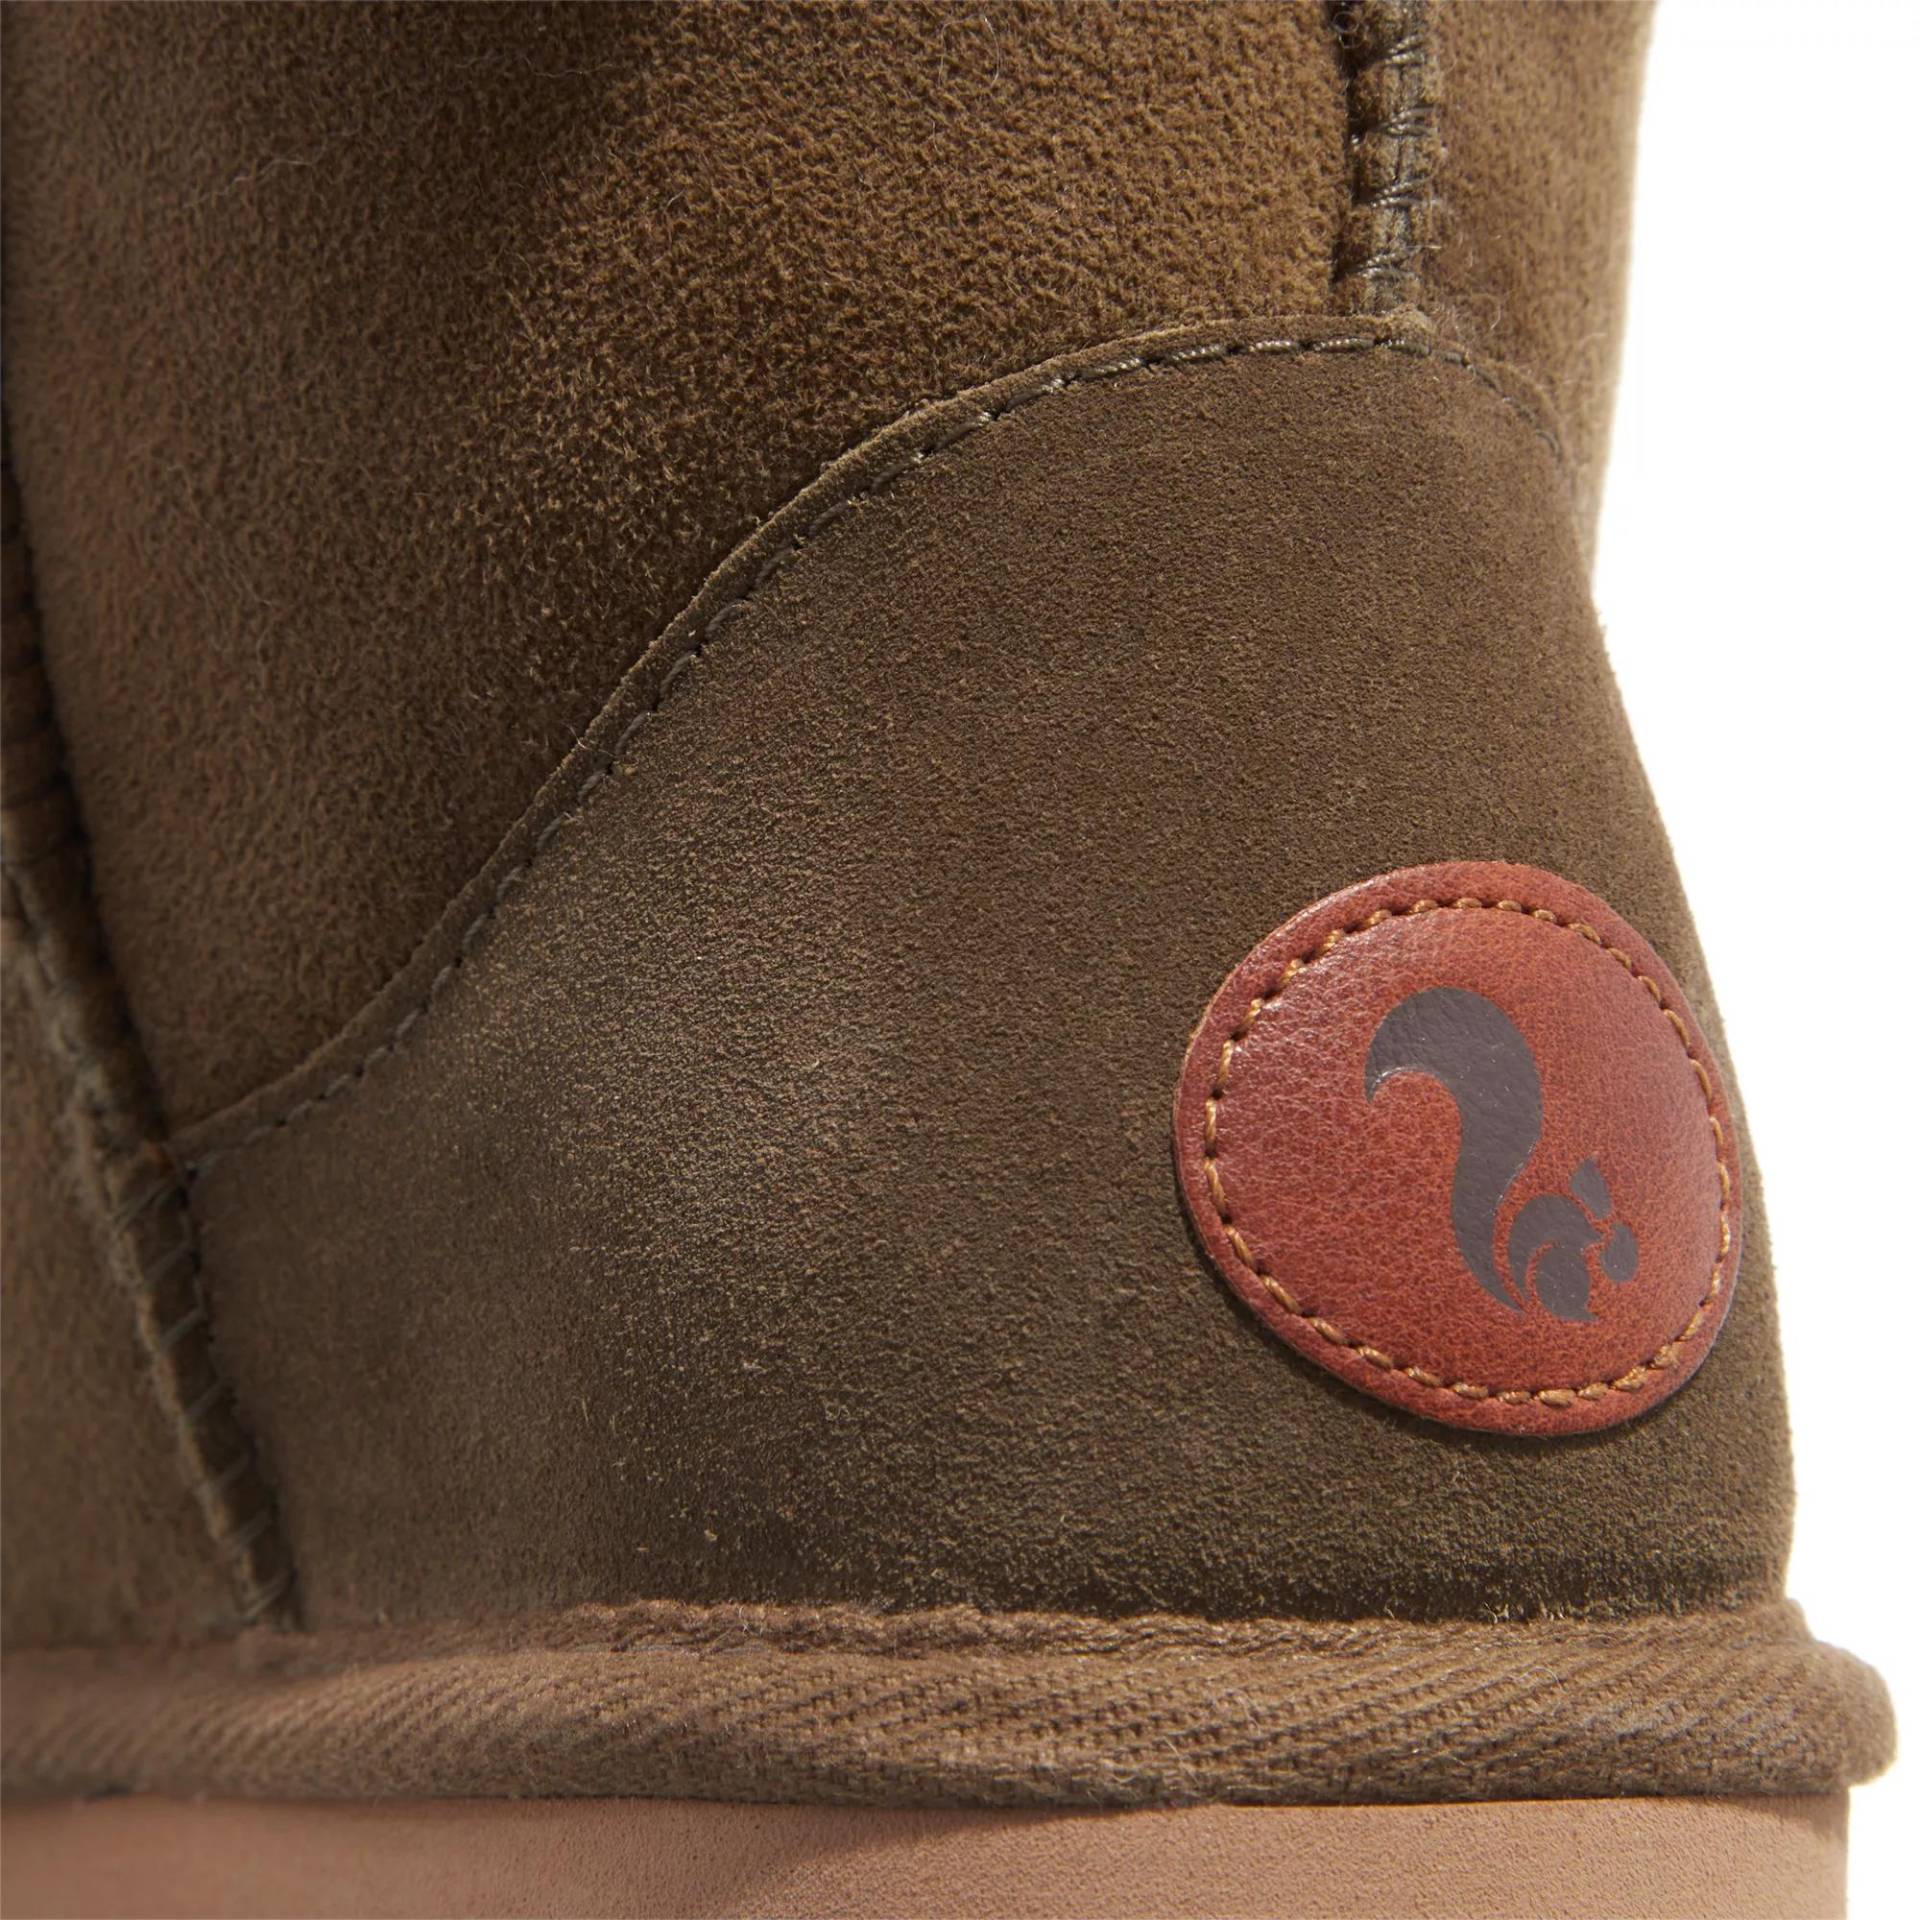 thies Sneakers - thies 1856 ® Classic Sheepskin boot olive (W) - Gr. 38 (EU) - in Grün - für Damen von thies